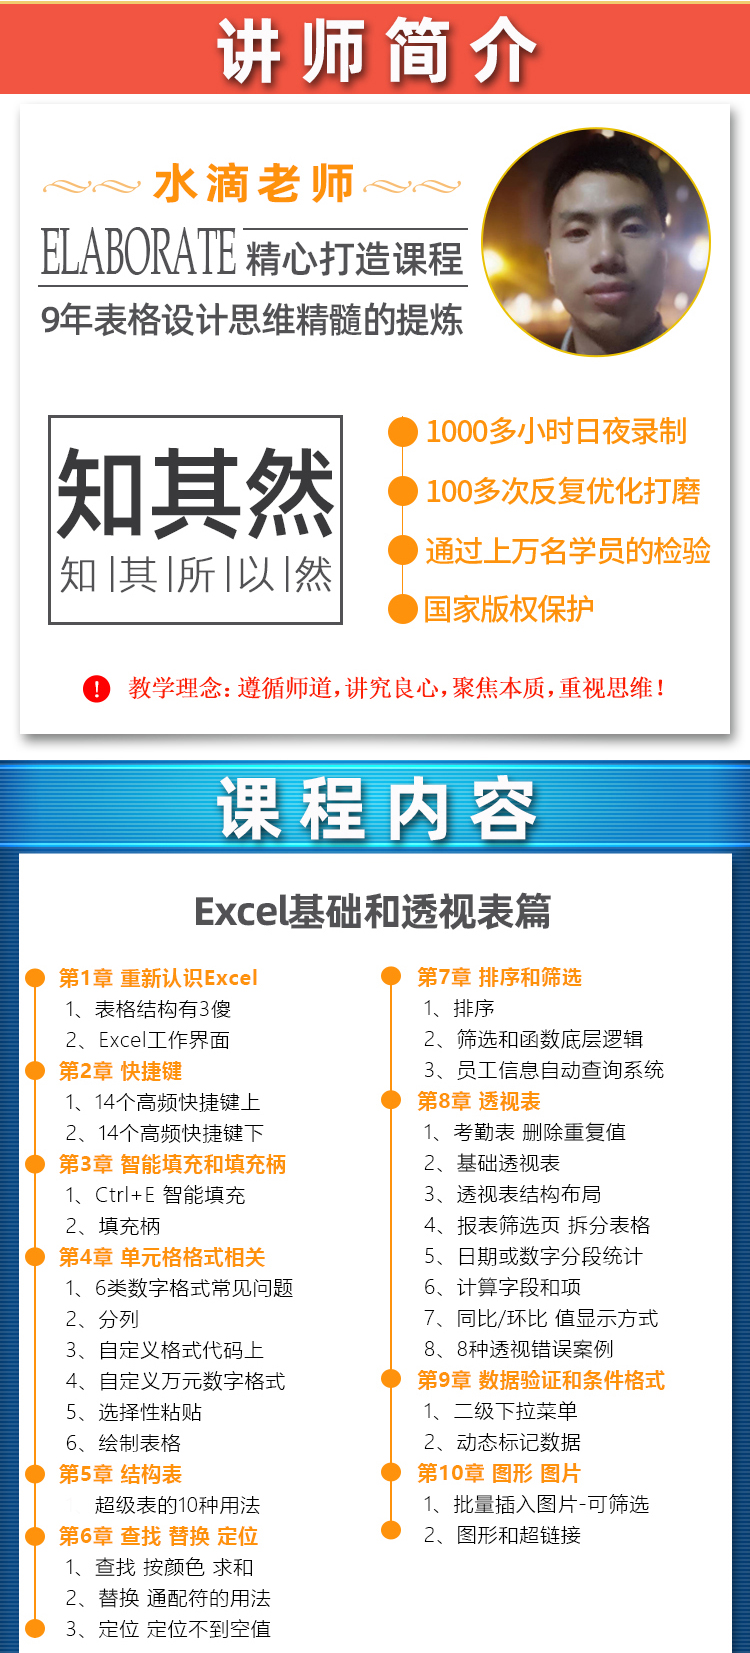 Excel小白偷懒+进销存系统开发_03.jpg